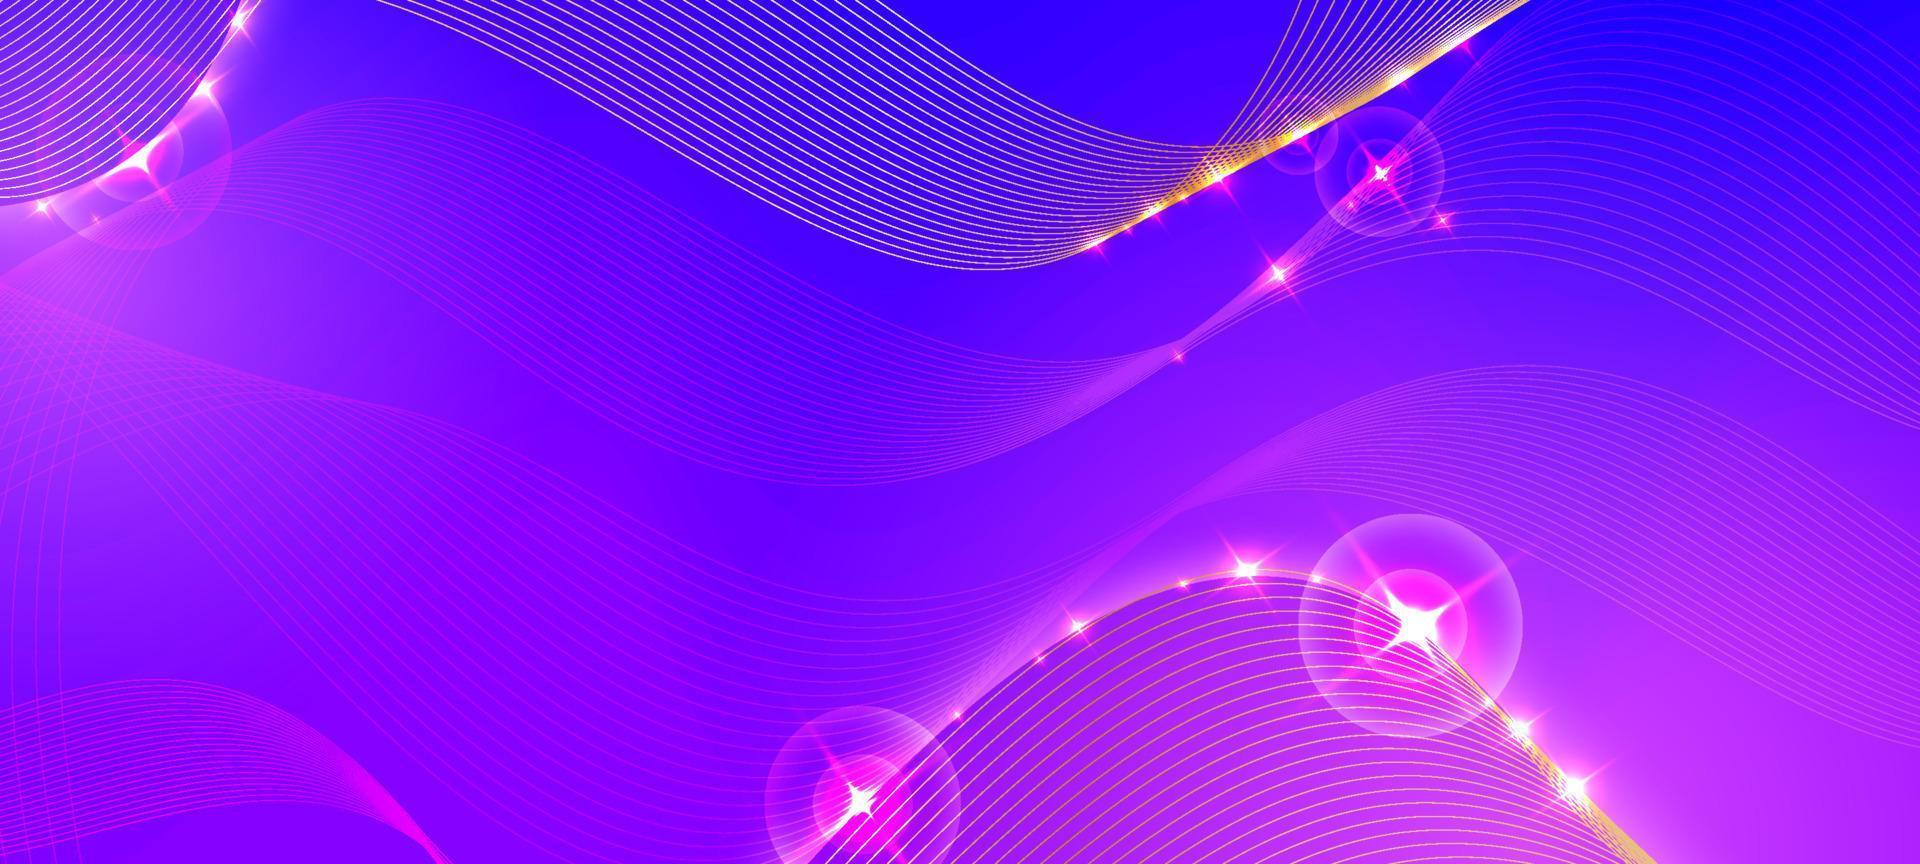 fondo de onda y líneas púrpura vector